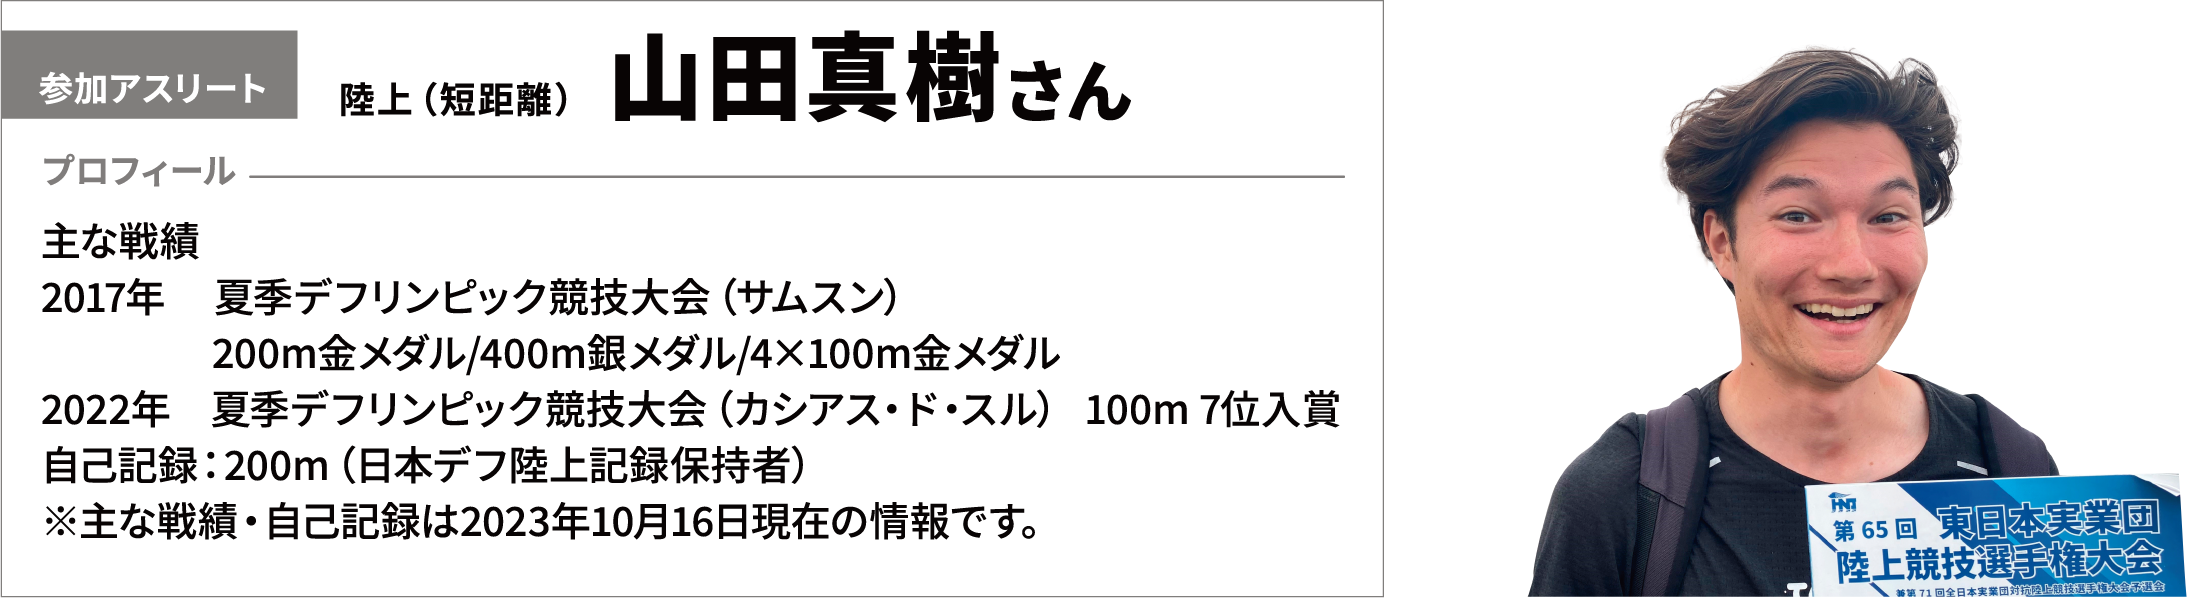 【参加アスリート】陸上（短距離）　山田真樹さん　【プロフィール】主な戦績　017年　 夏季デフリンピック競技大会（サムスン）200m金メダル/400m銀メダル/4×100m金メダル　2022年　夏季デフリンピック競技大会（カシアス・ド・スル） 100m 7位入賞　自己記録：200m（日本デフ陸上記録保持者）※主な戦績・自己記録は2023年10月16日現在の情報です。